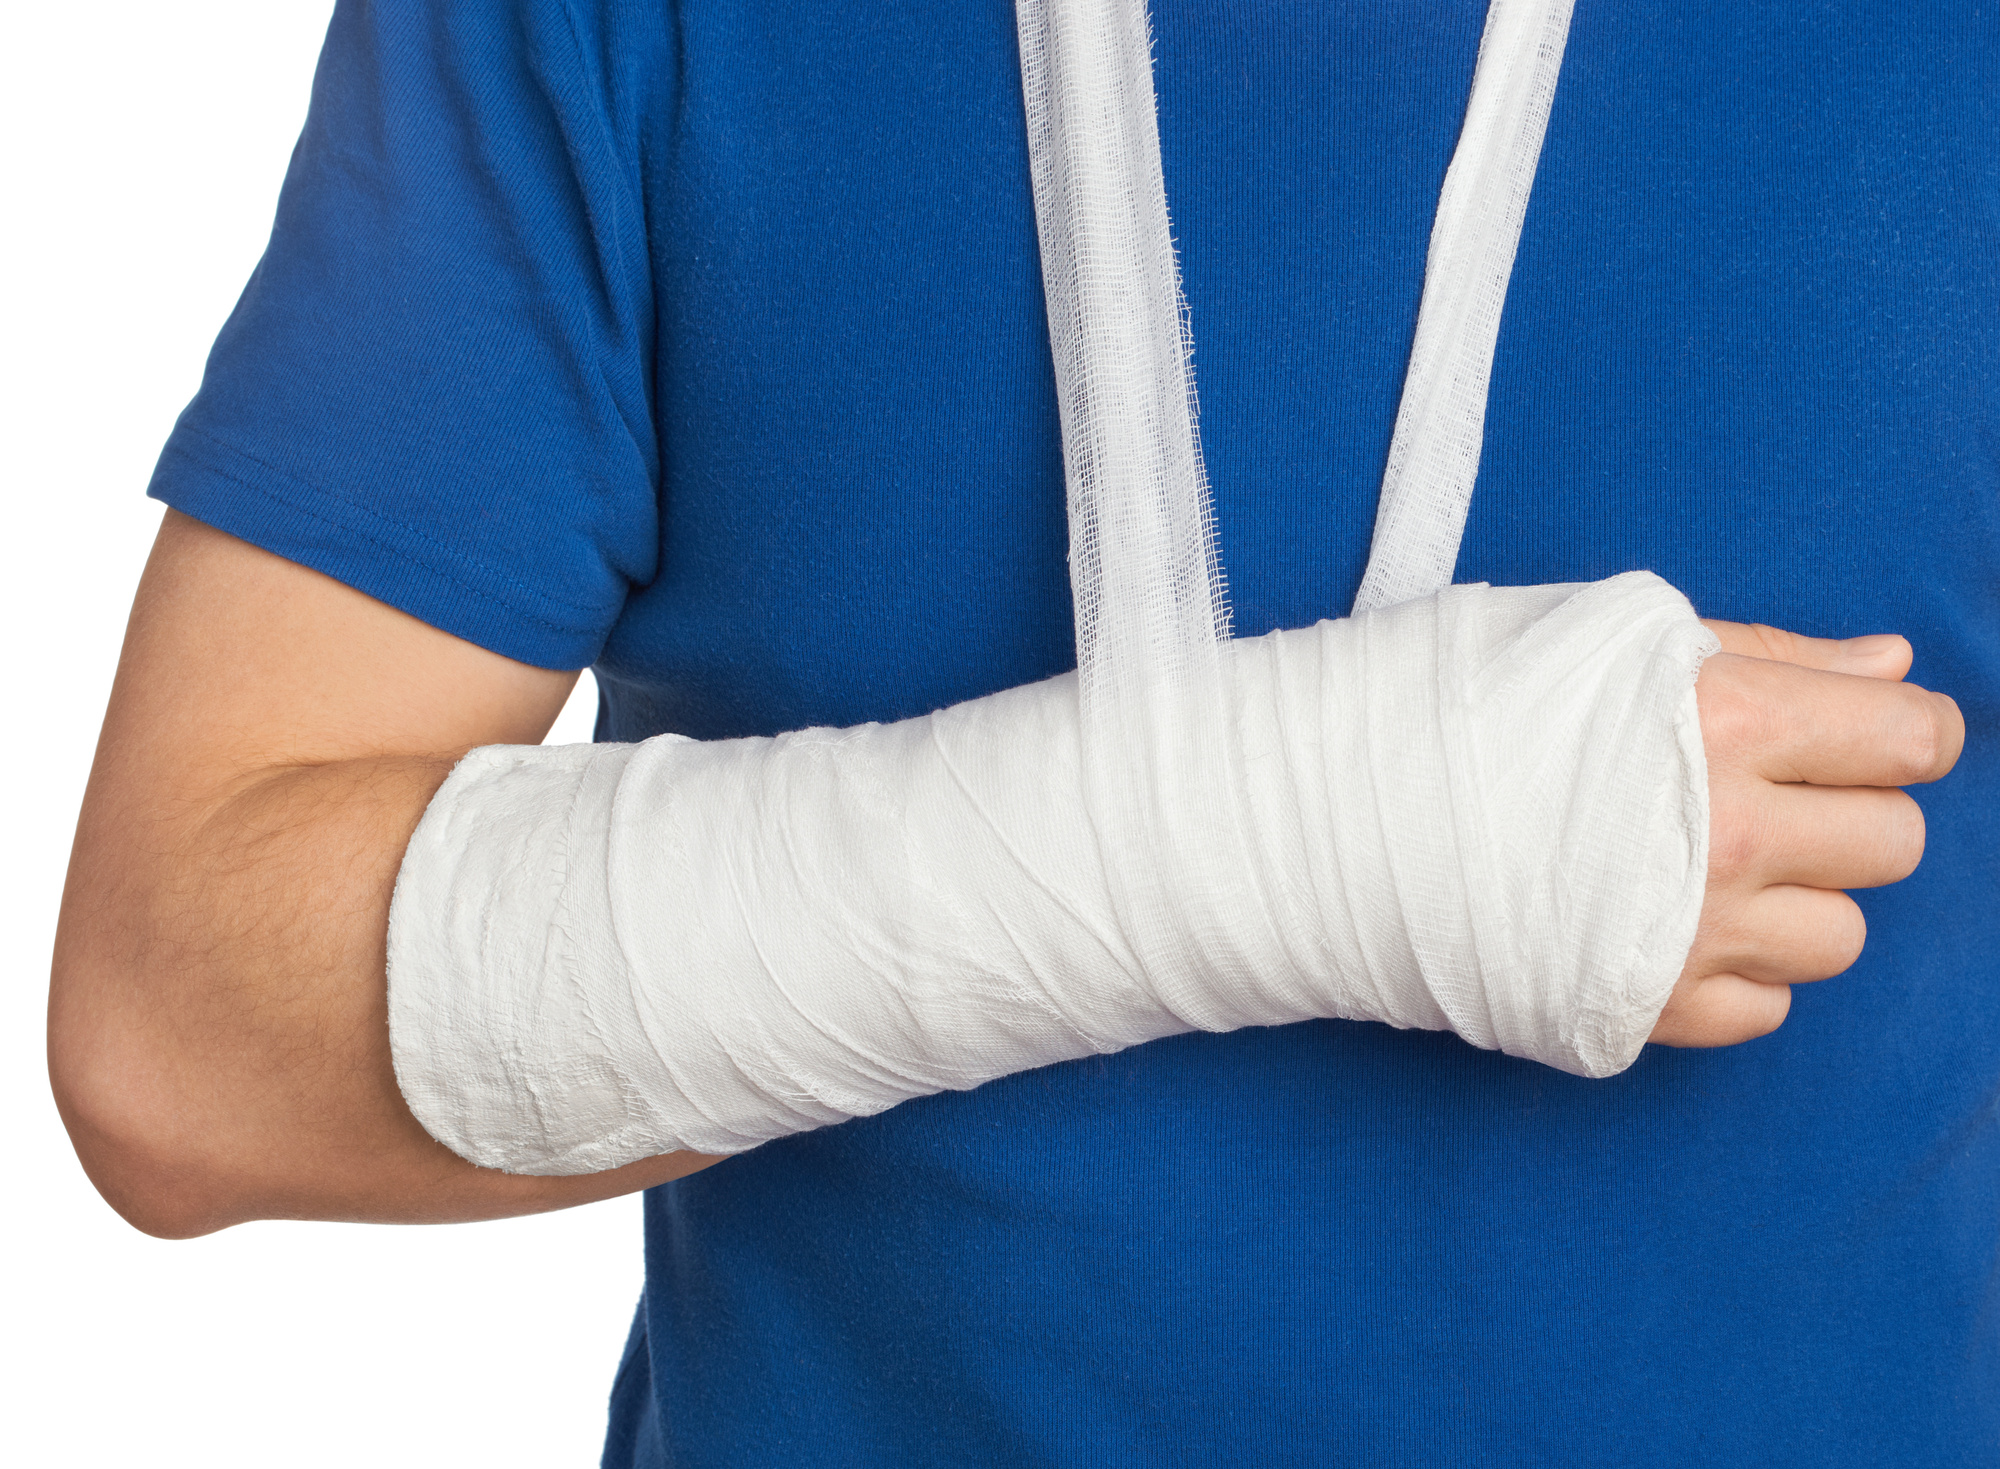 La recuperación de una fractura de brazo depende de la parte afectada, la edad y estado de salud del paciente. (Foto Prensa Libre: Shutterstock)